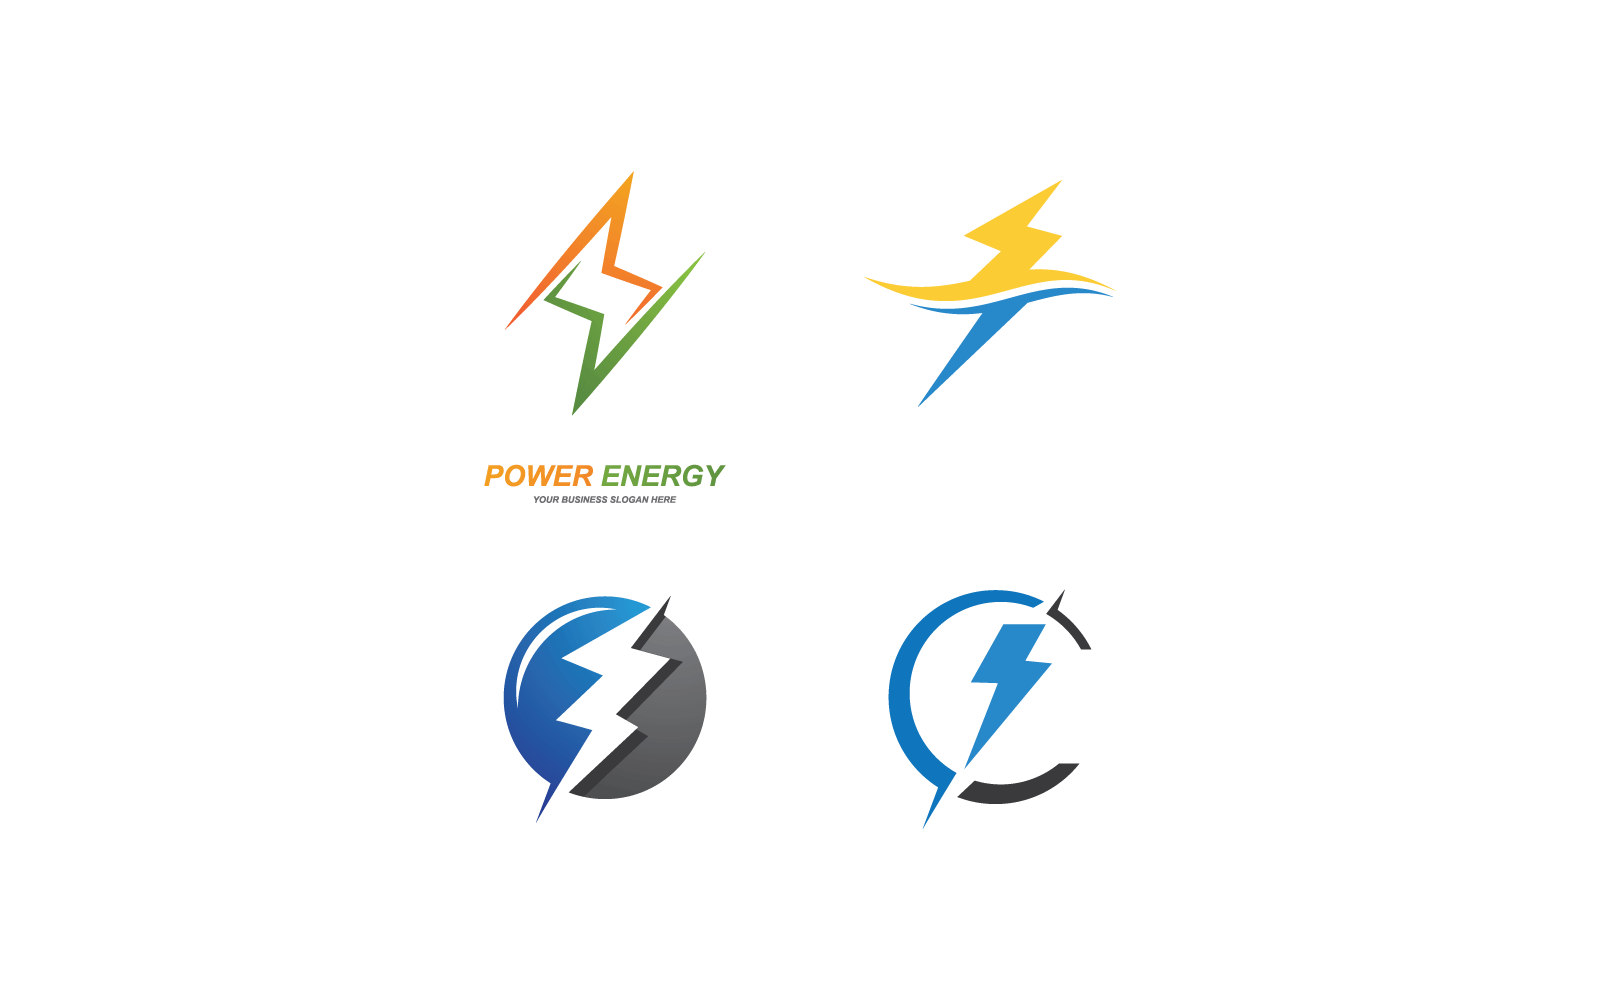 Power lightning power energy illustration logo vector design